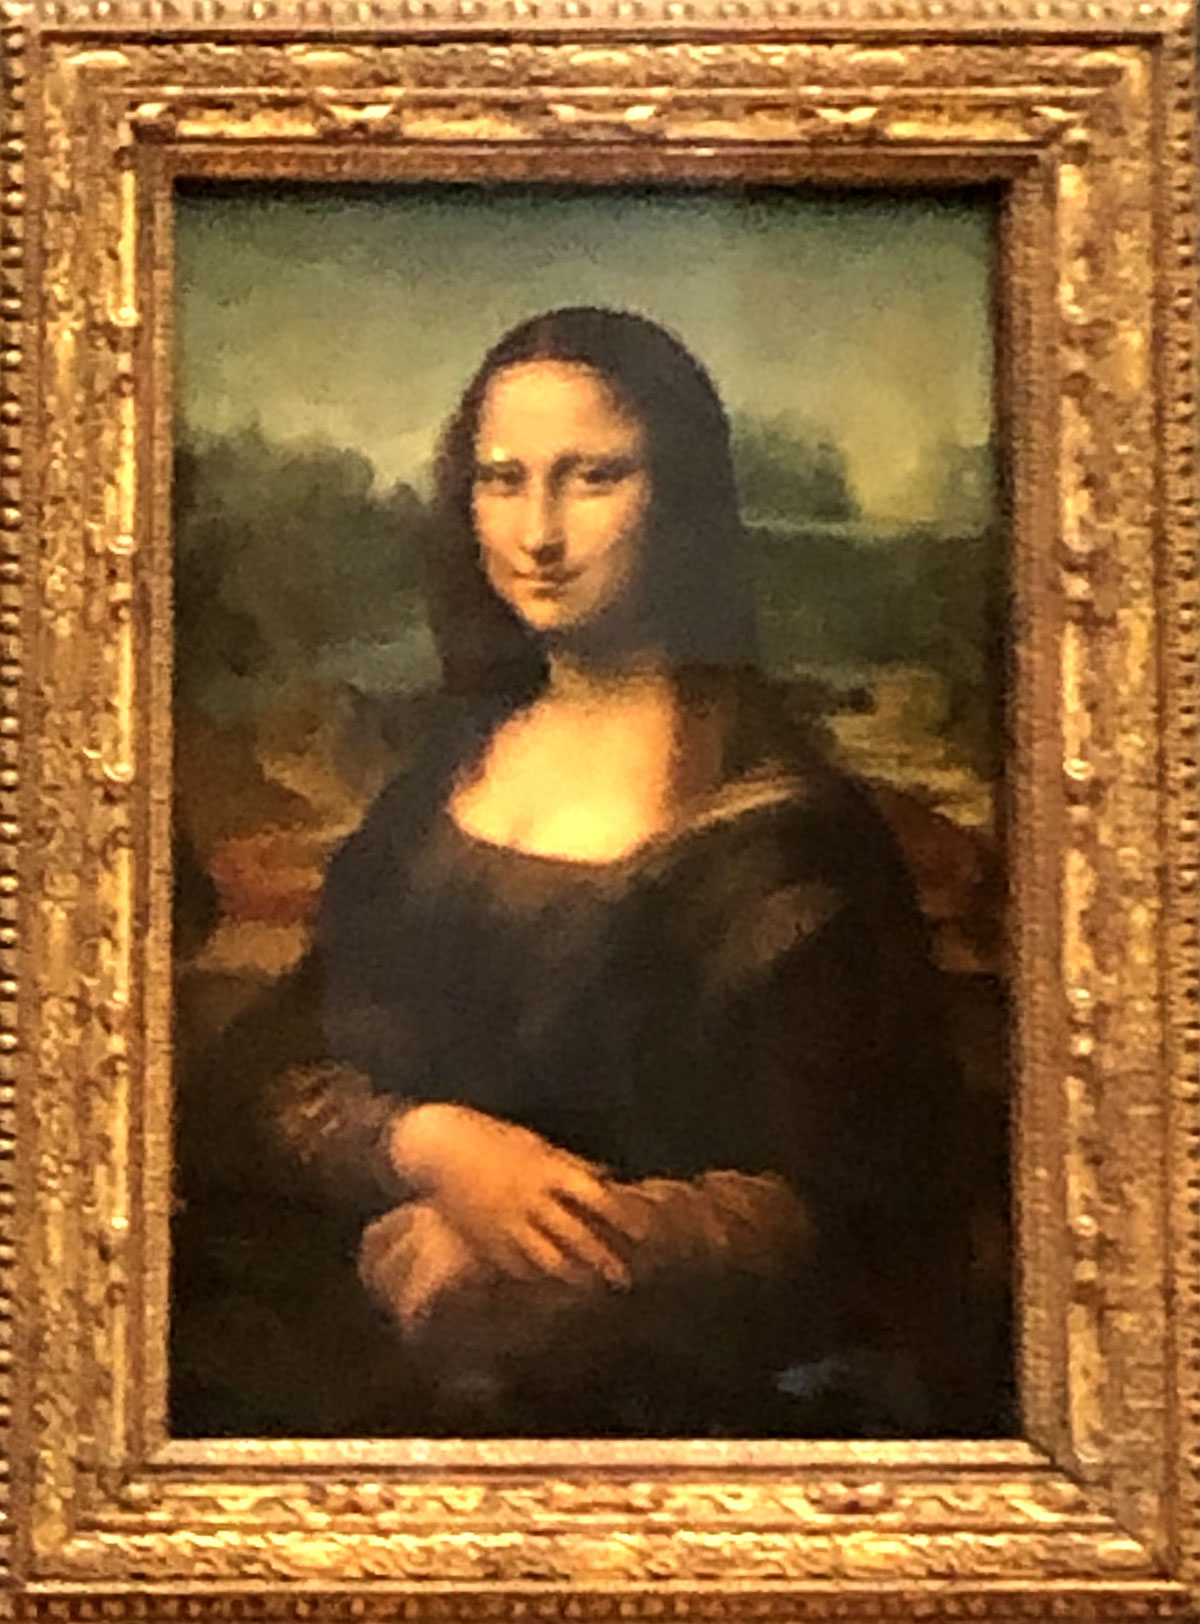 Ölgemälde "Mona Lisa" von Leonardo da Vinci im Louvre